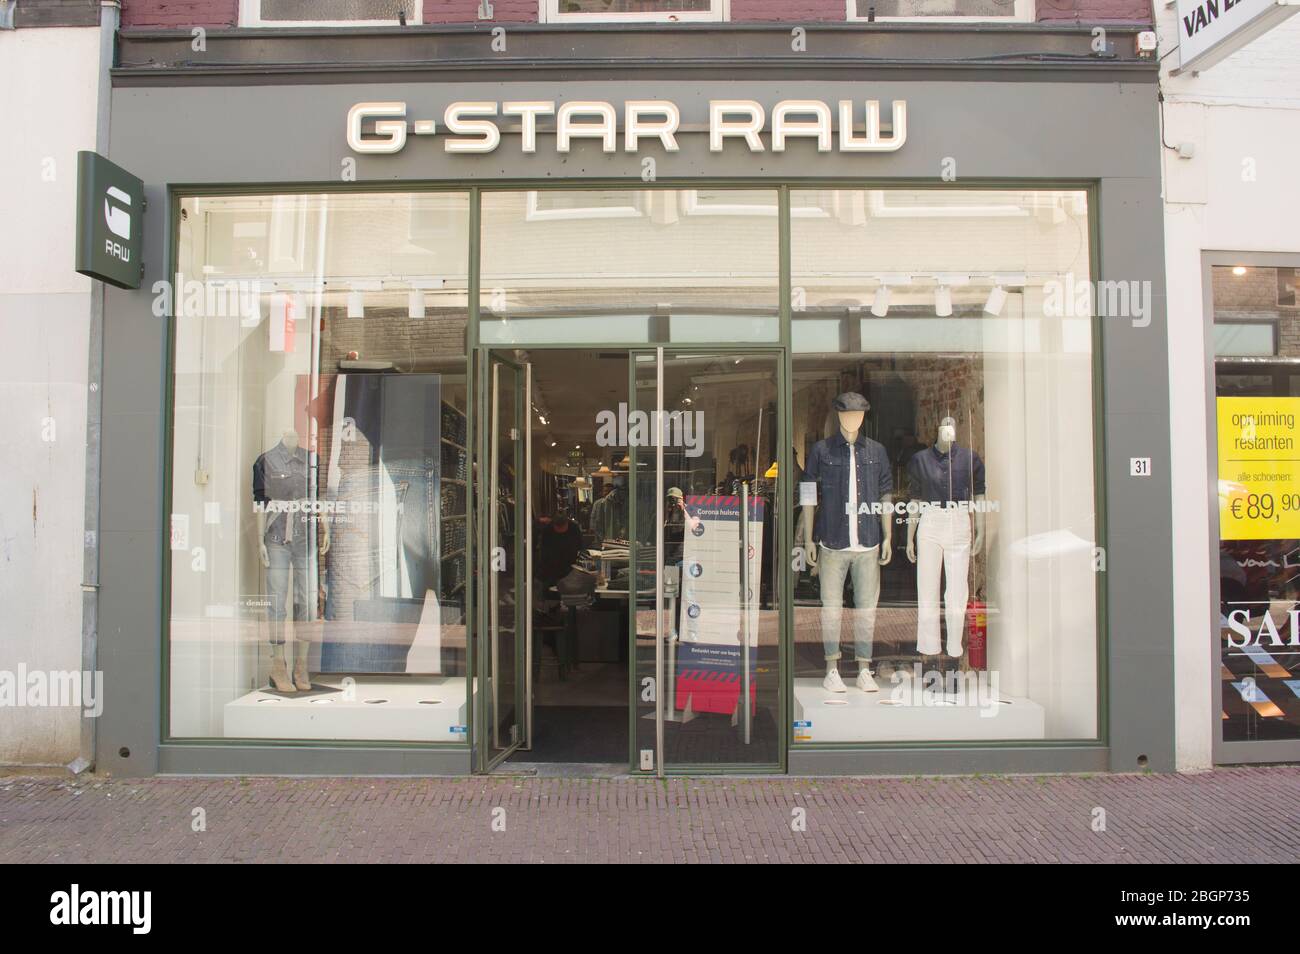 Arnhem, Pays-Bas - 17 avril 2020: Entrée d'un magasin G-Star RAW. G-Star  RAW est une entreprise néerlandaise de vêtements de marque Photo Stock -  Alamy